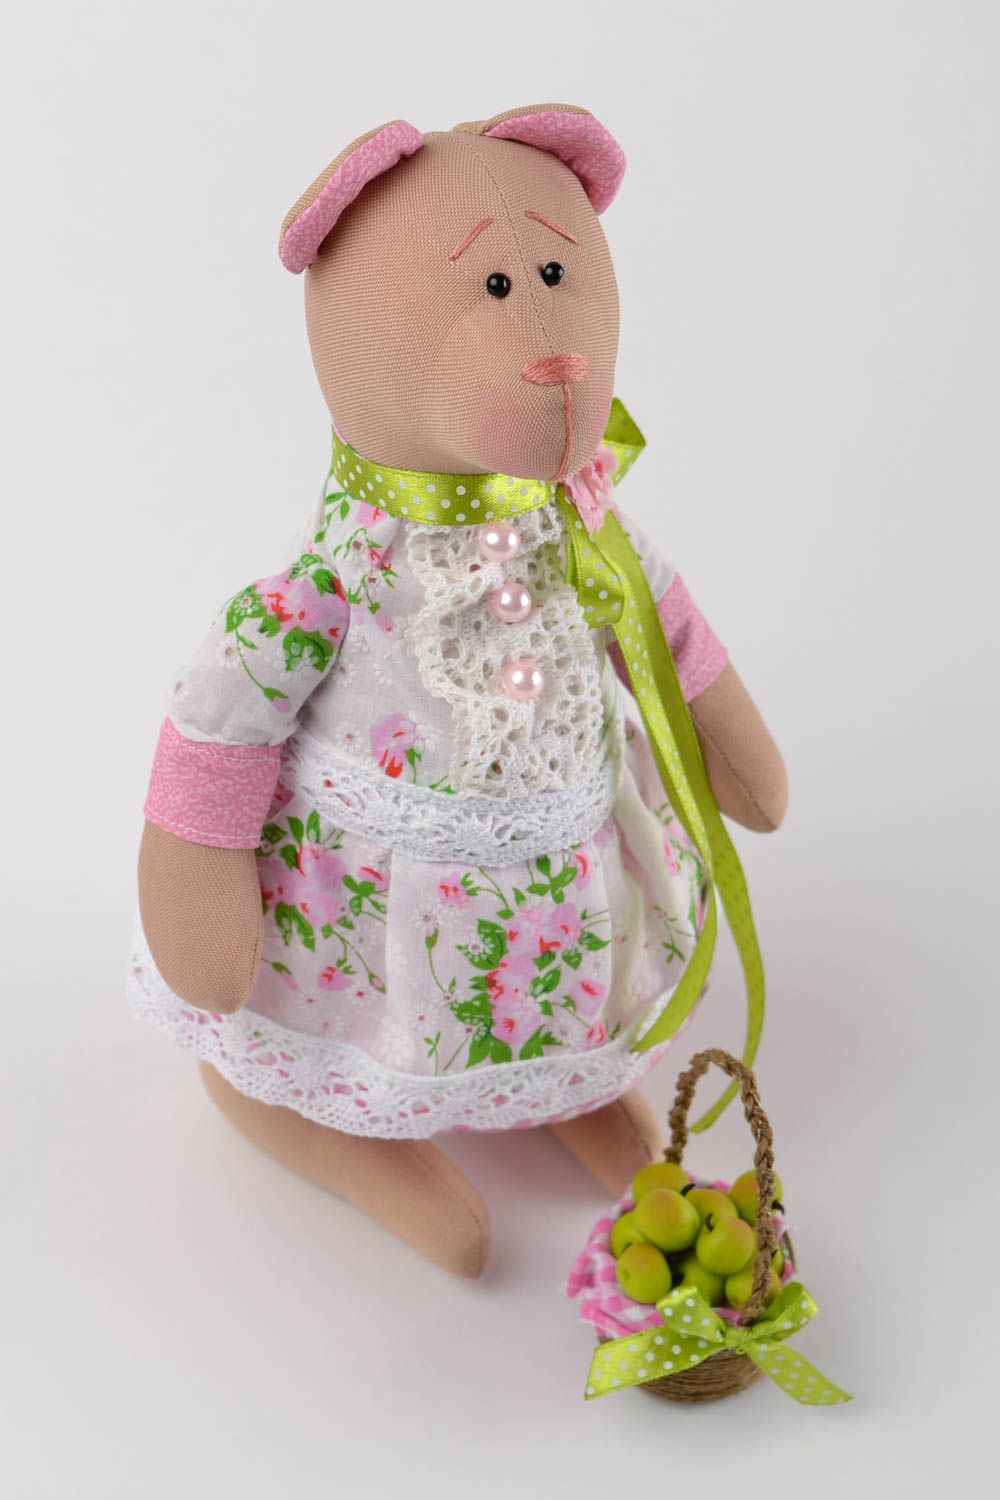 Мягкая игрушка кукла ручной работы в виде мишки оригинальный подарок из ткани фото 3